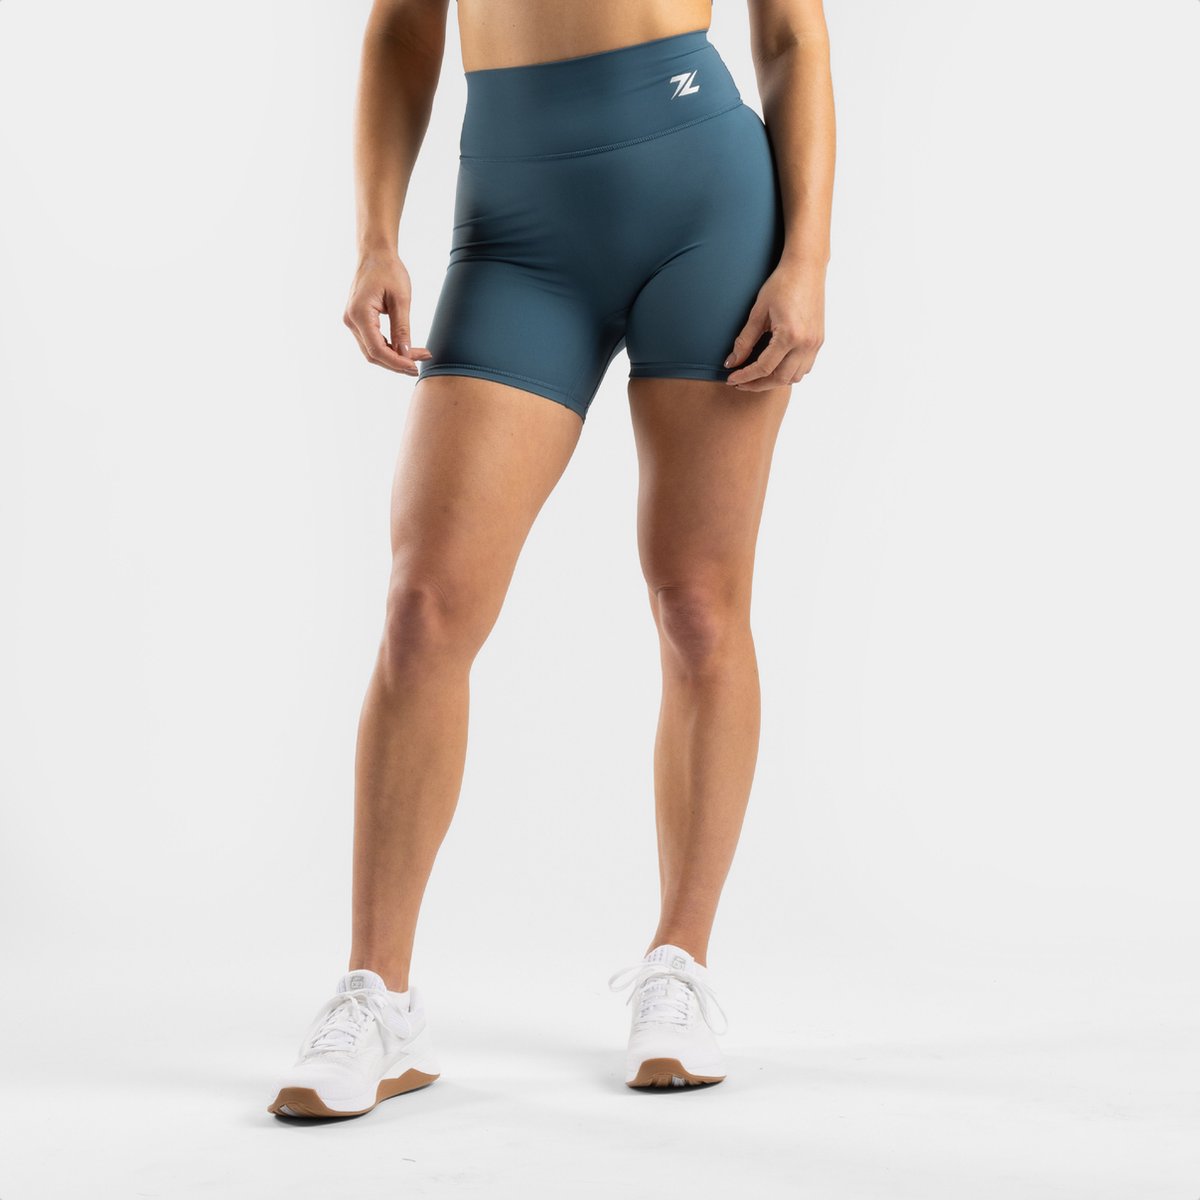 ZEUZ Korte Sport Legging Dames High Waist - Sportkleding & Sportlegging Squat Proof - Fitness & Crossfit - Hardloopbroek, Yoga Broek - 70% Nylon & 30% Elastaan - Blauw - Maat L